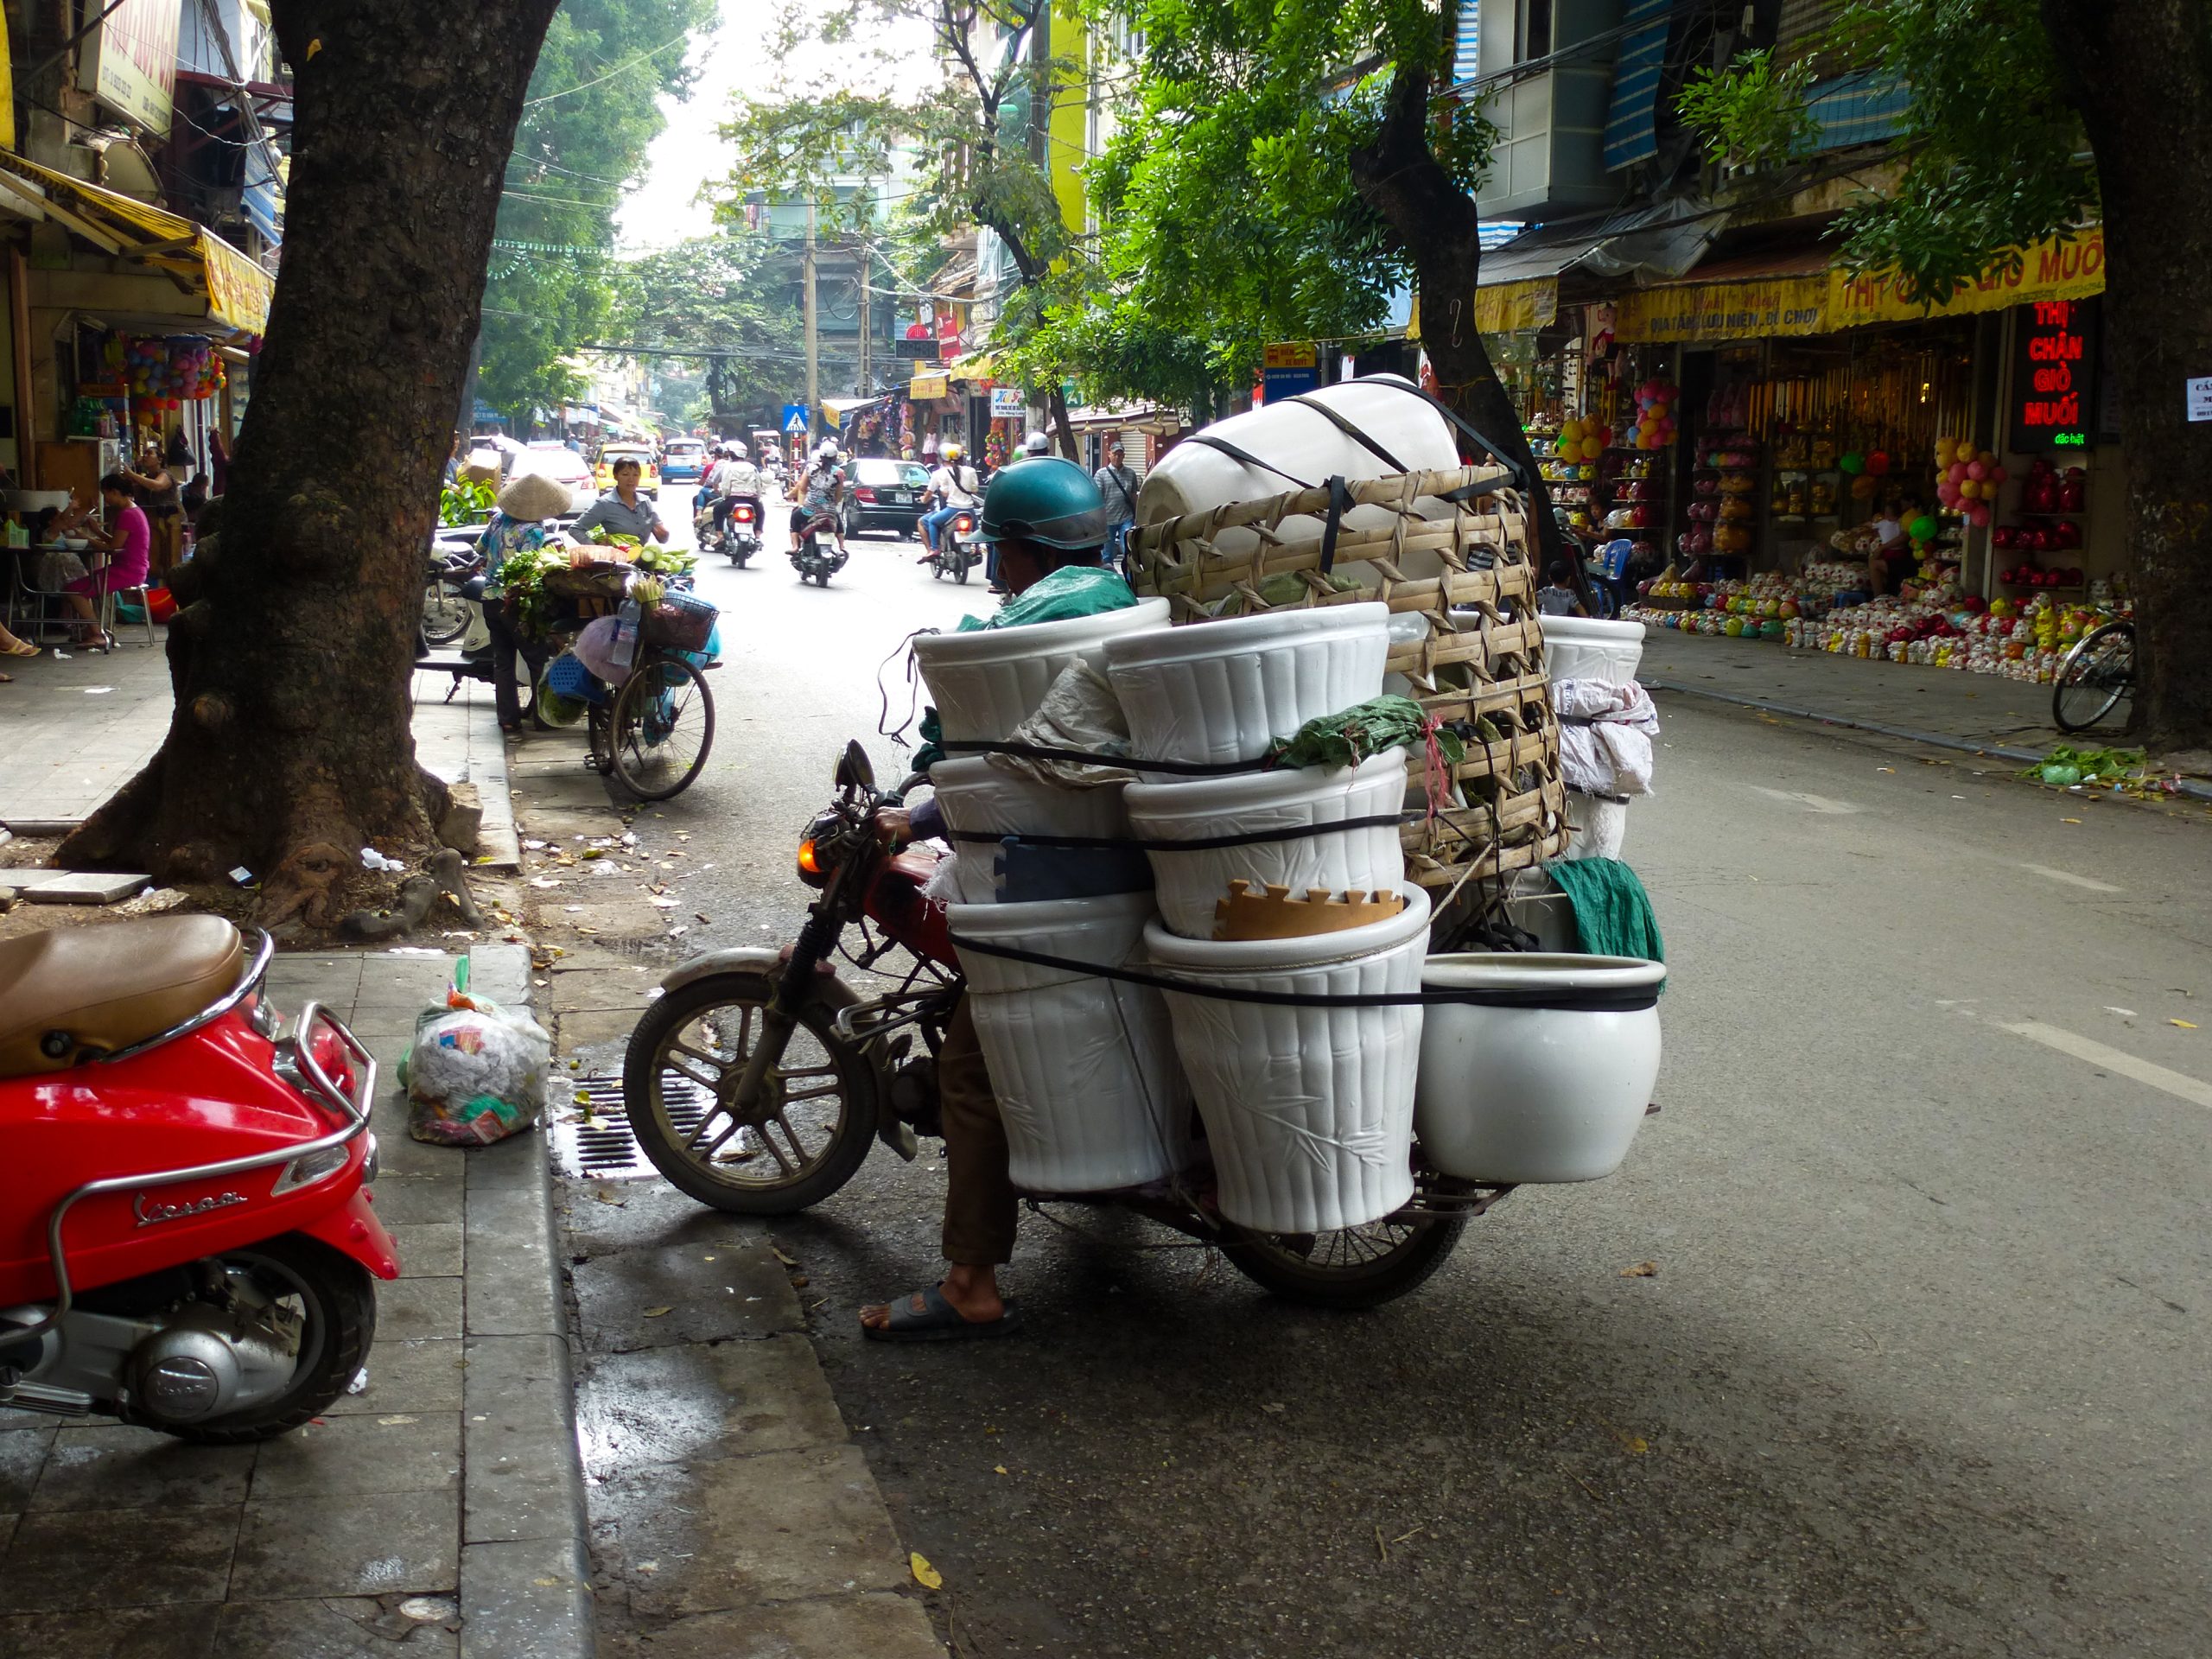 Gewoon een van de vele scooters in Hanoi. Je kunt er altijd meer mee vervoeren dan je denkt!